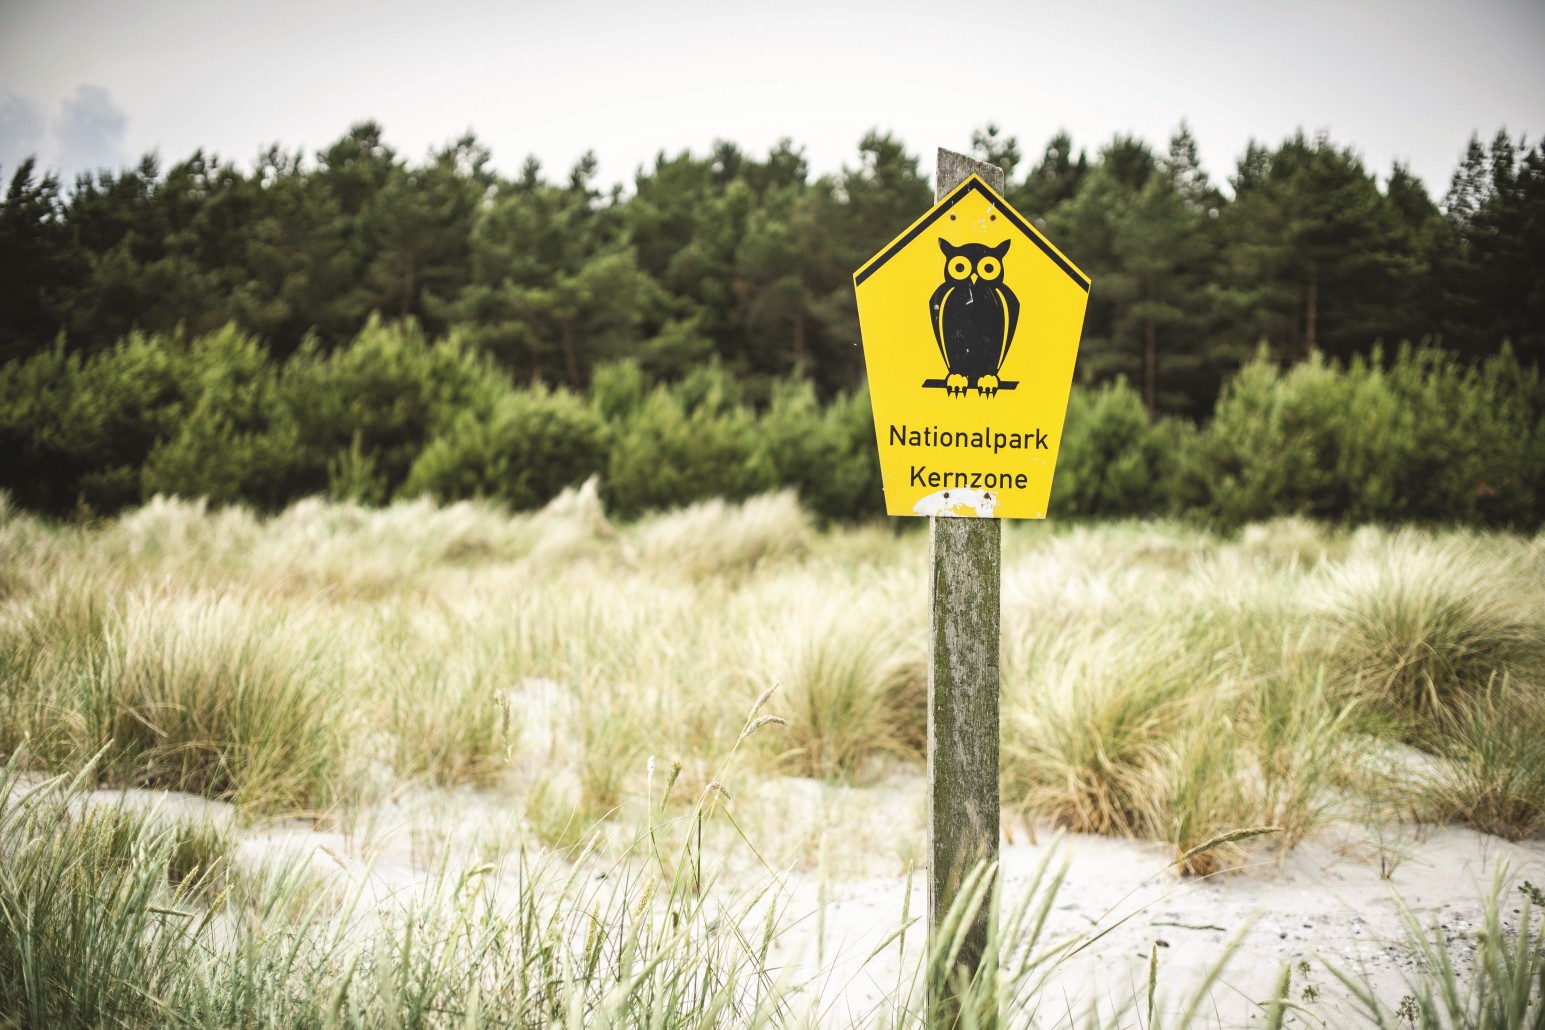 Das Bild zeigt das in den ostdeutschen Bundesländern übliche Schild für die Ausweisung einer Nationalpark-Kernzone. Es zeigt eine Eule. Das Schild steht in einer Steppenwiese, im Hintergrund grenzt ein Wald an. 